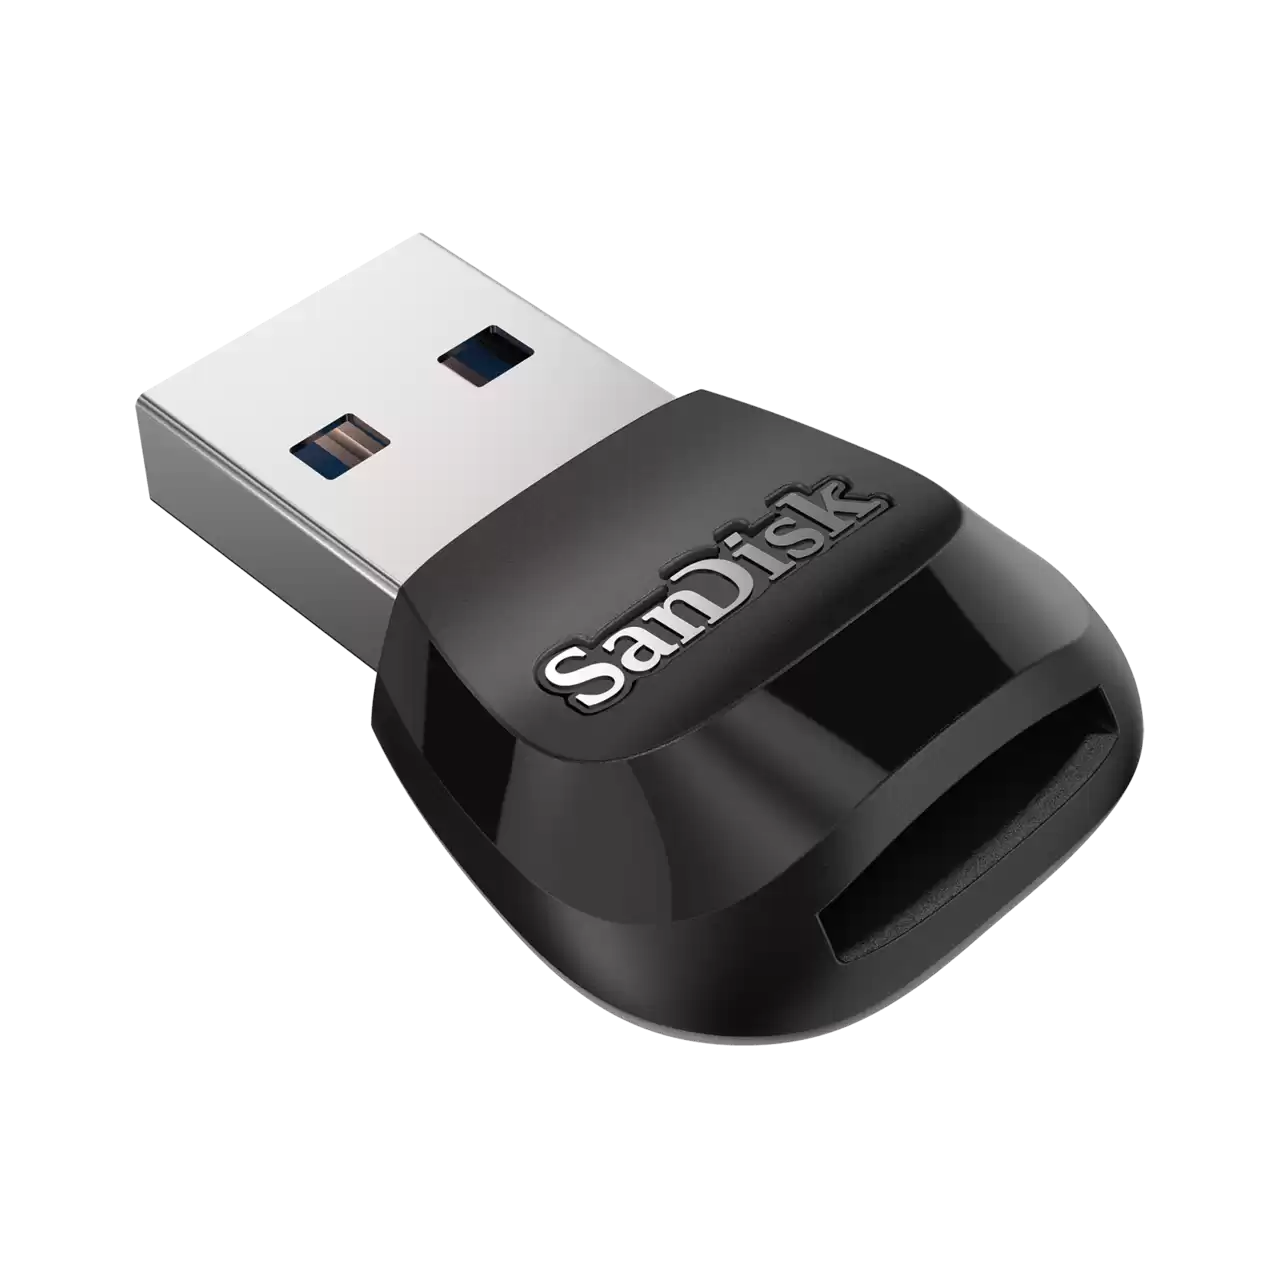   Sandisk MobileMate  microSD USB